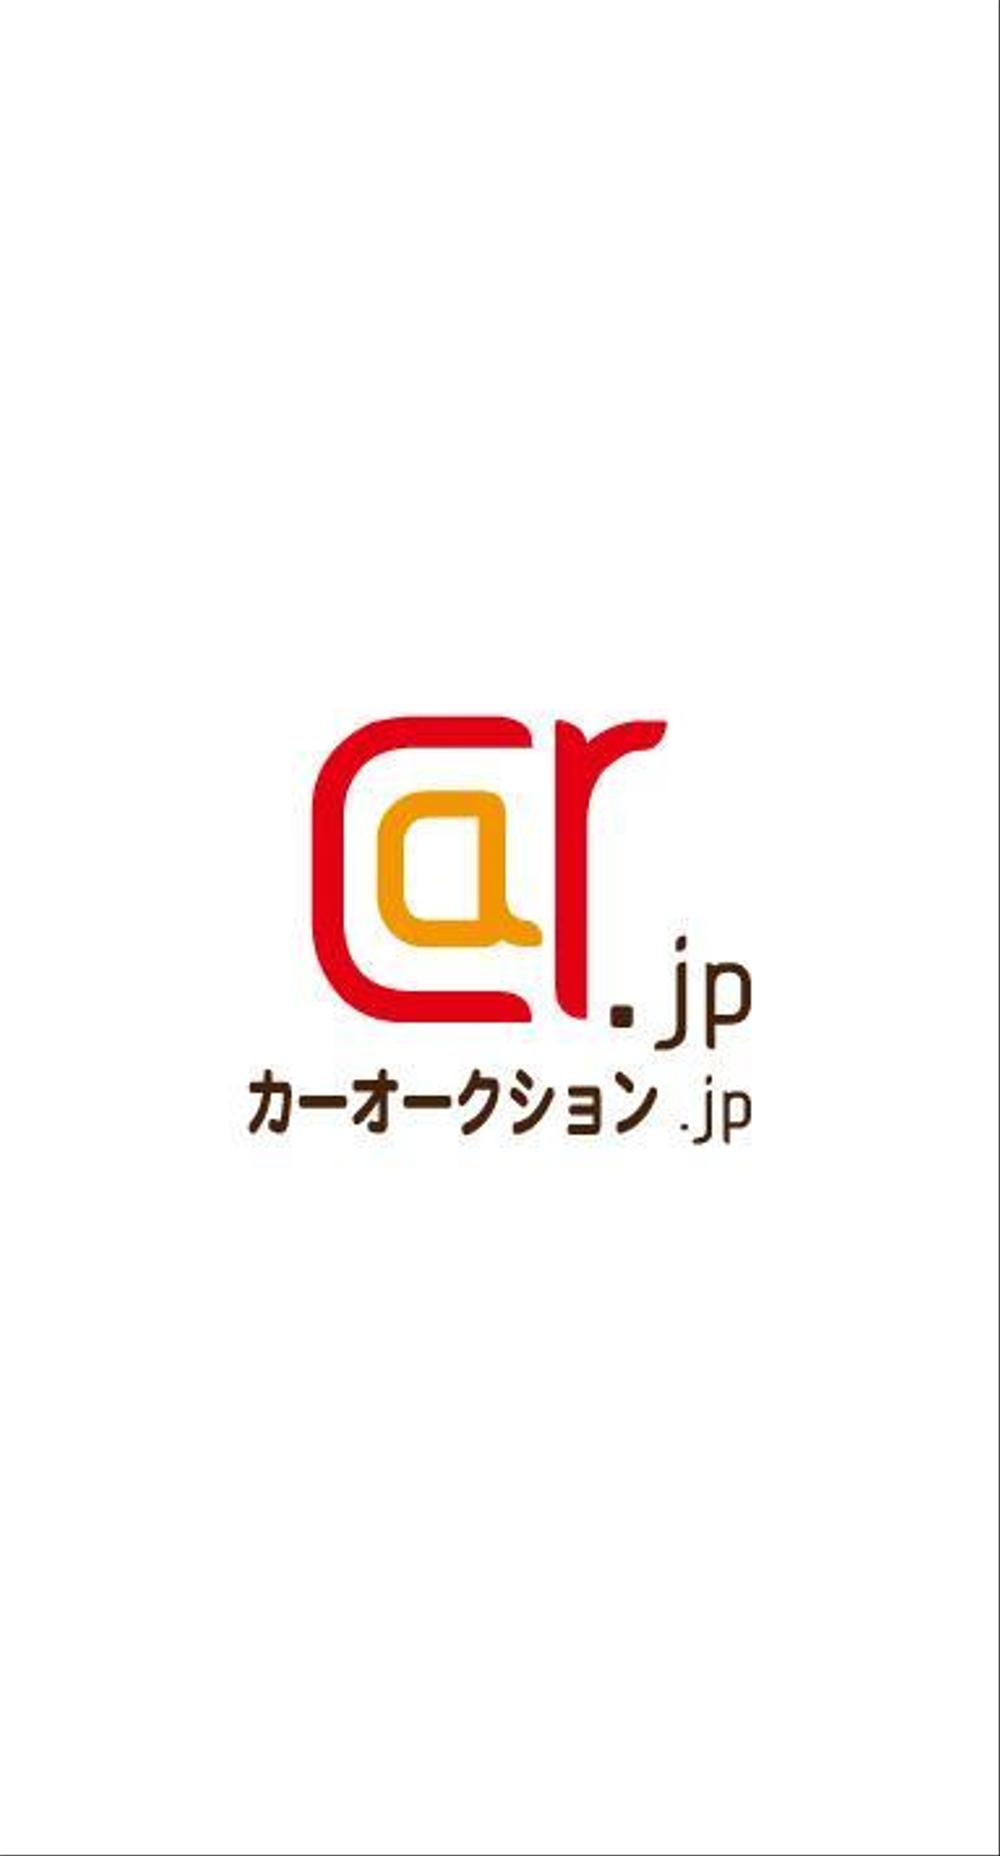 「カーオークション.jp」のロゴ作成